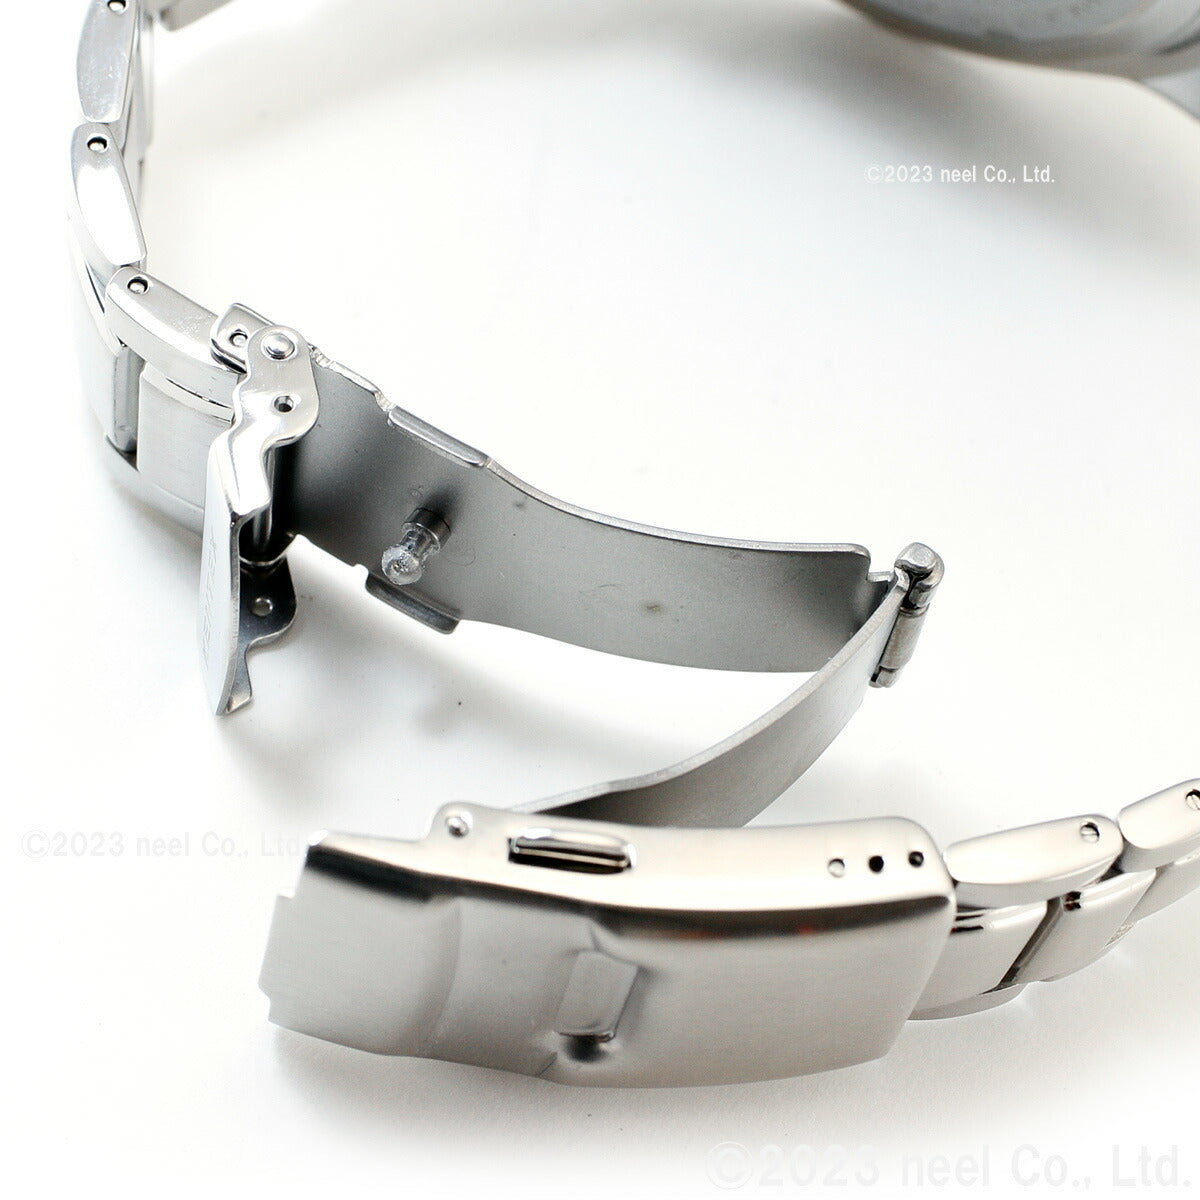 ケンテックス KENTEX 腕時計 時計 メンズ ダイバーズ 自動巻き マリンマン シーアングラー 日本製 S706X-2